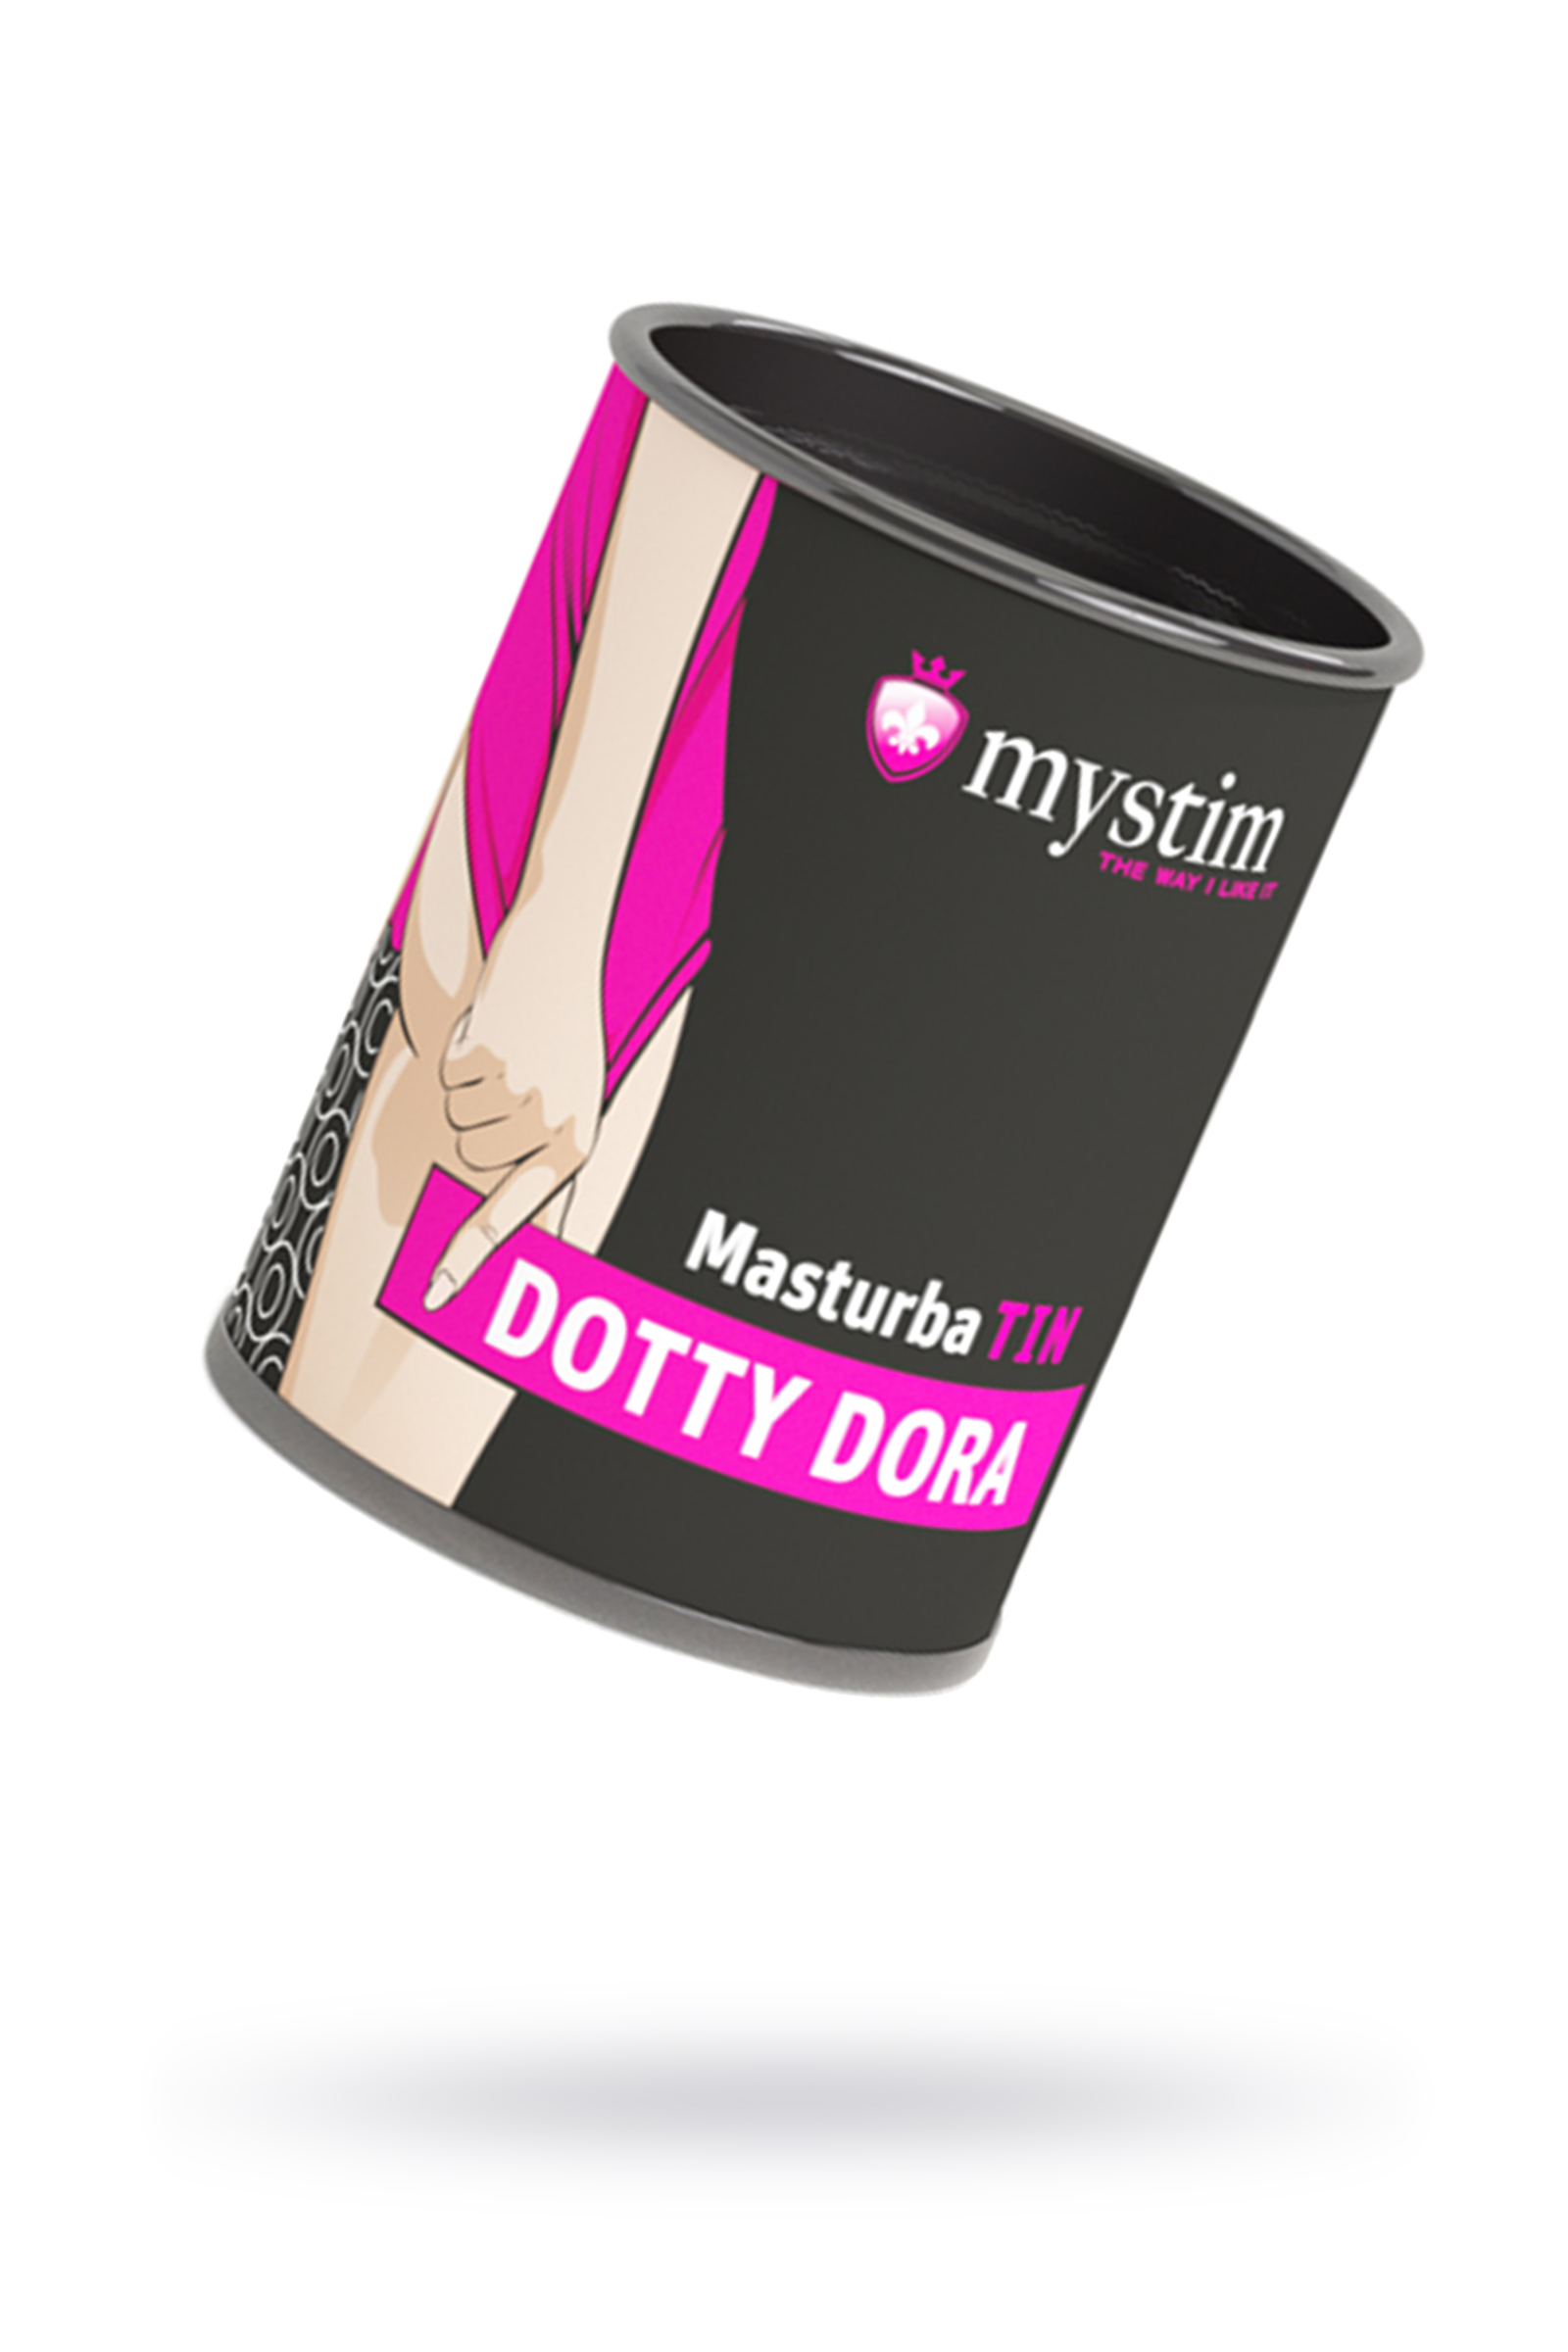 Mystim Mastürbatör Dotty Dora Masturbatör, TPE, beyaz, 4,5 cm